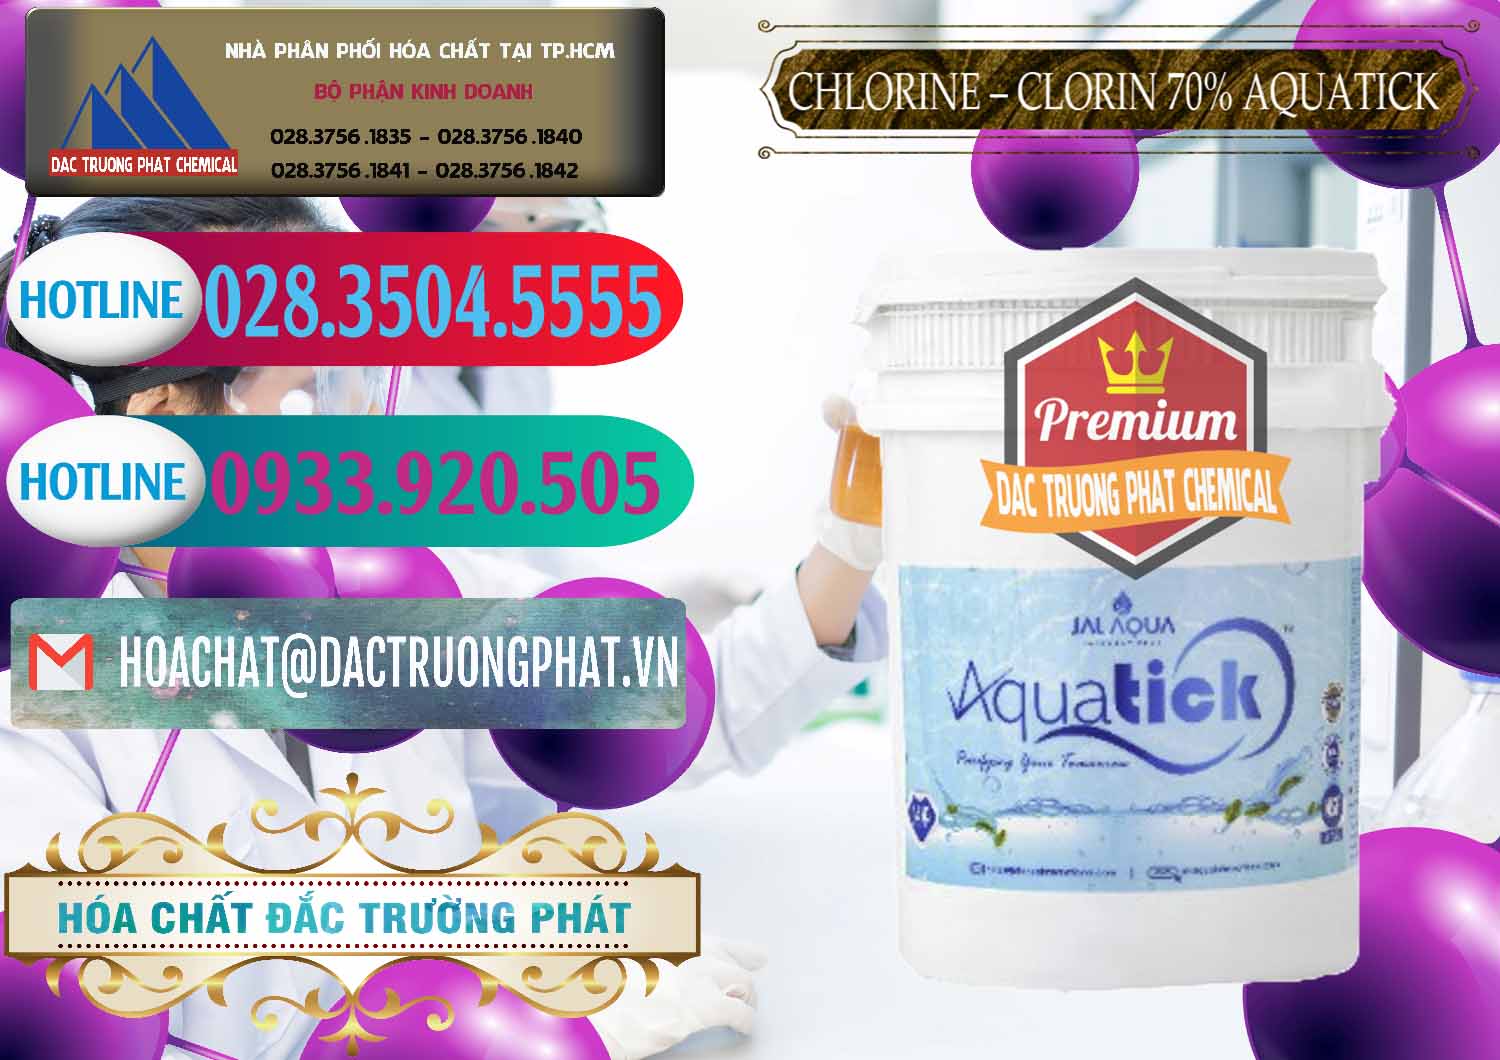 Cty chuyên kinh doanh & bán Chlorine – Clorin 70% Aquatick Thùng Cao Jal Aqua Ấn Độ India - 0237 - Nơi chuyên bán ( cung cấp ) hóa chất tại TP.HCM - truongphat.vn